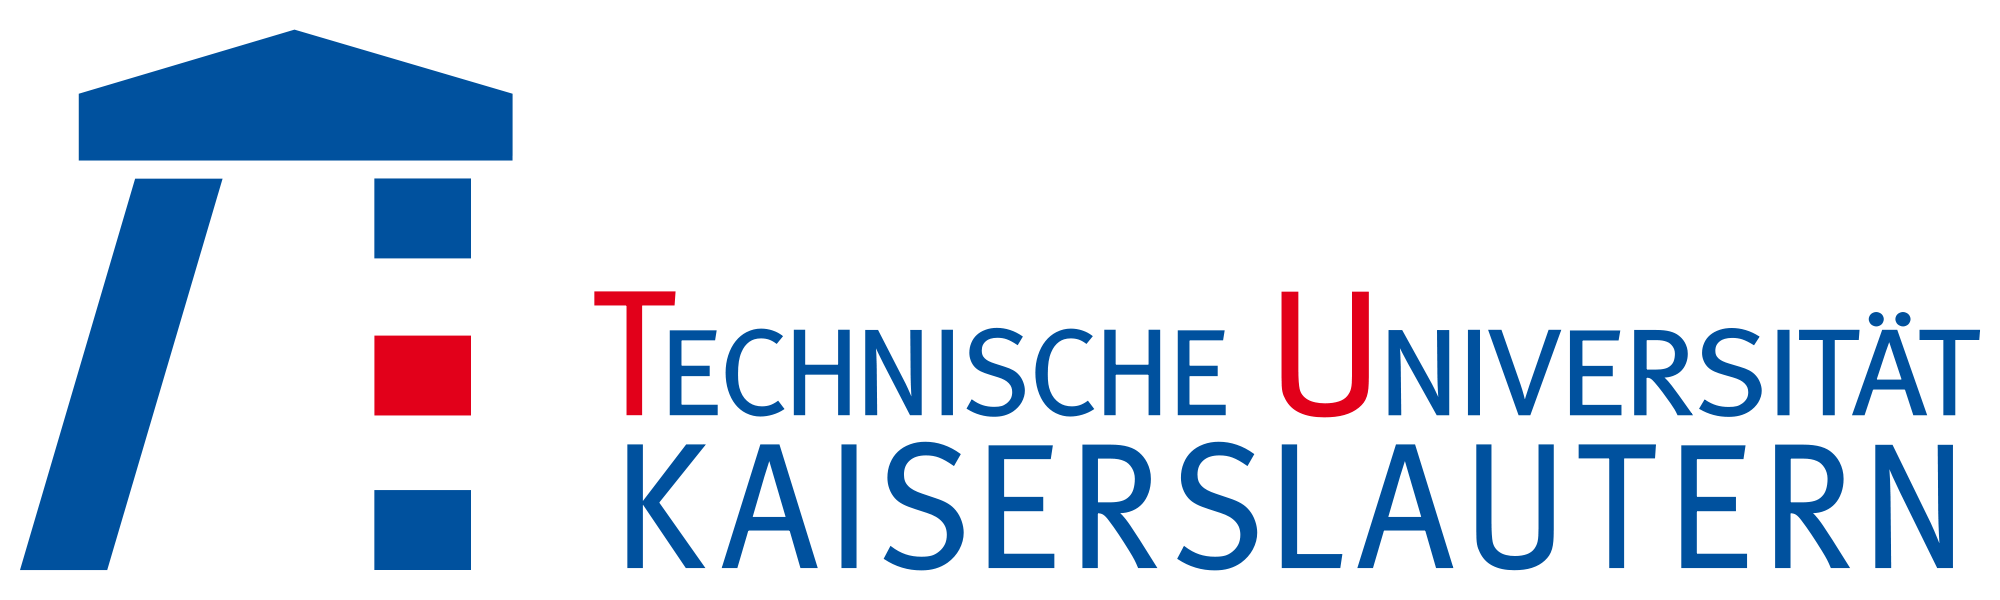 Logo-Kaiserslautern